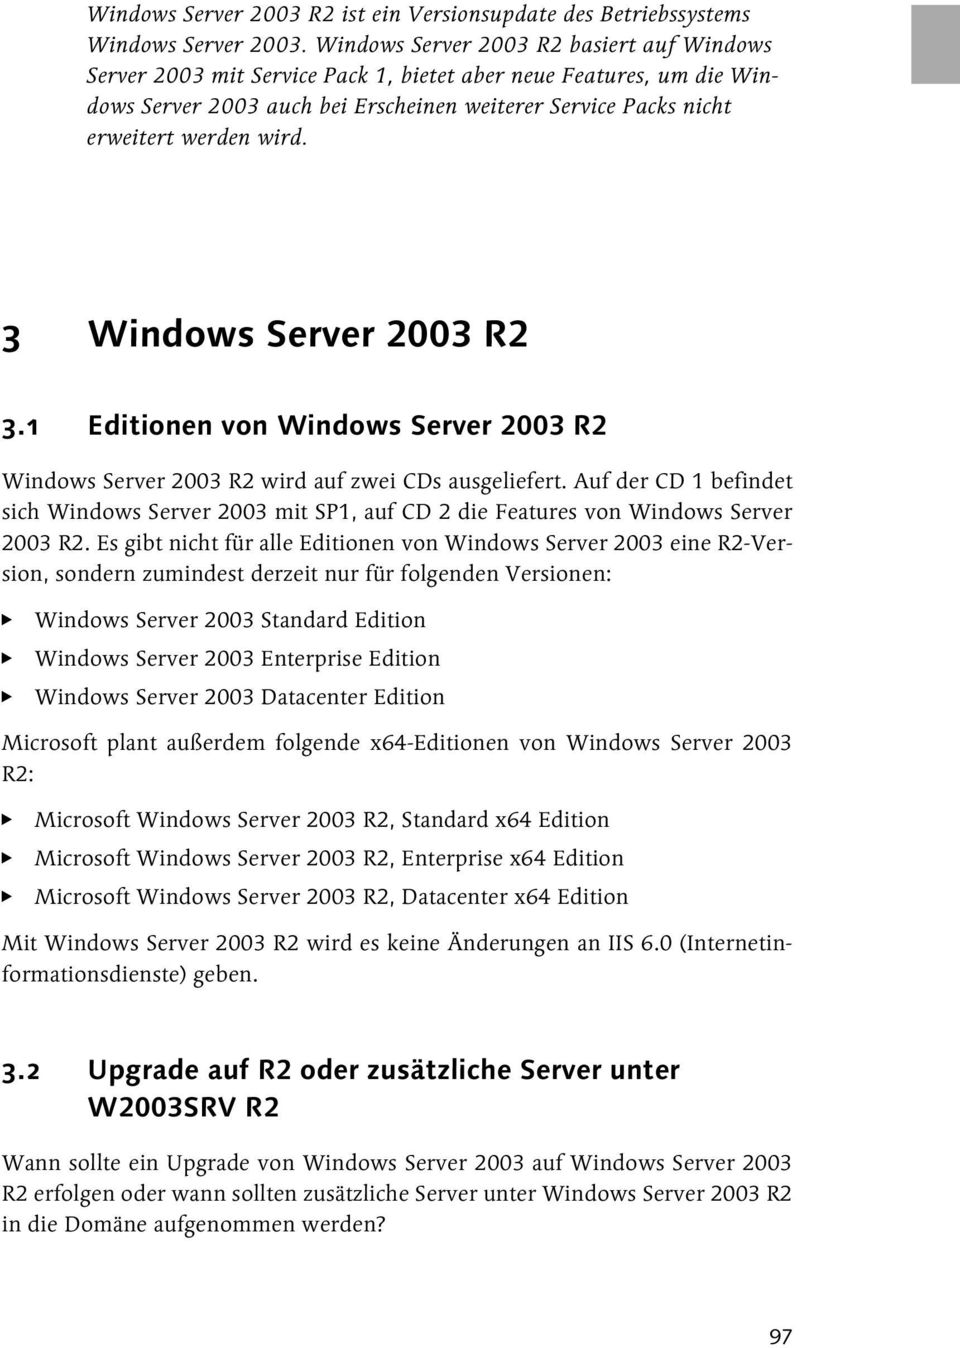 3 Windows Server 2003 R2 3.1 Editionen von Windows Server 2003 R2 Windows Server 2003 R2 wird auf zwei CDs ausgeliefert.